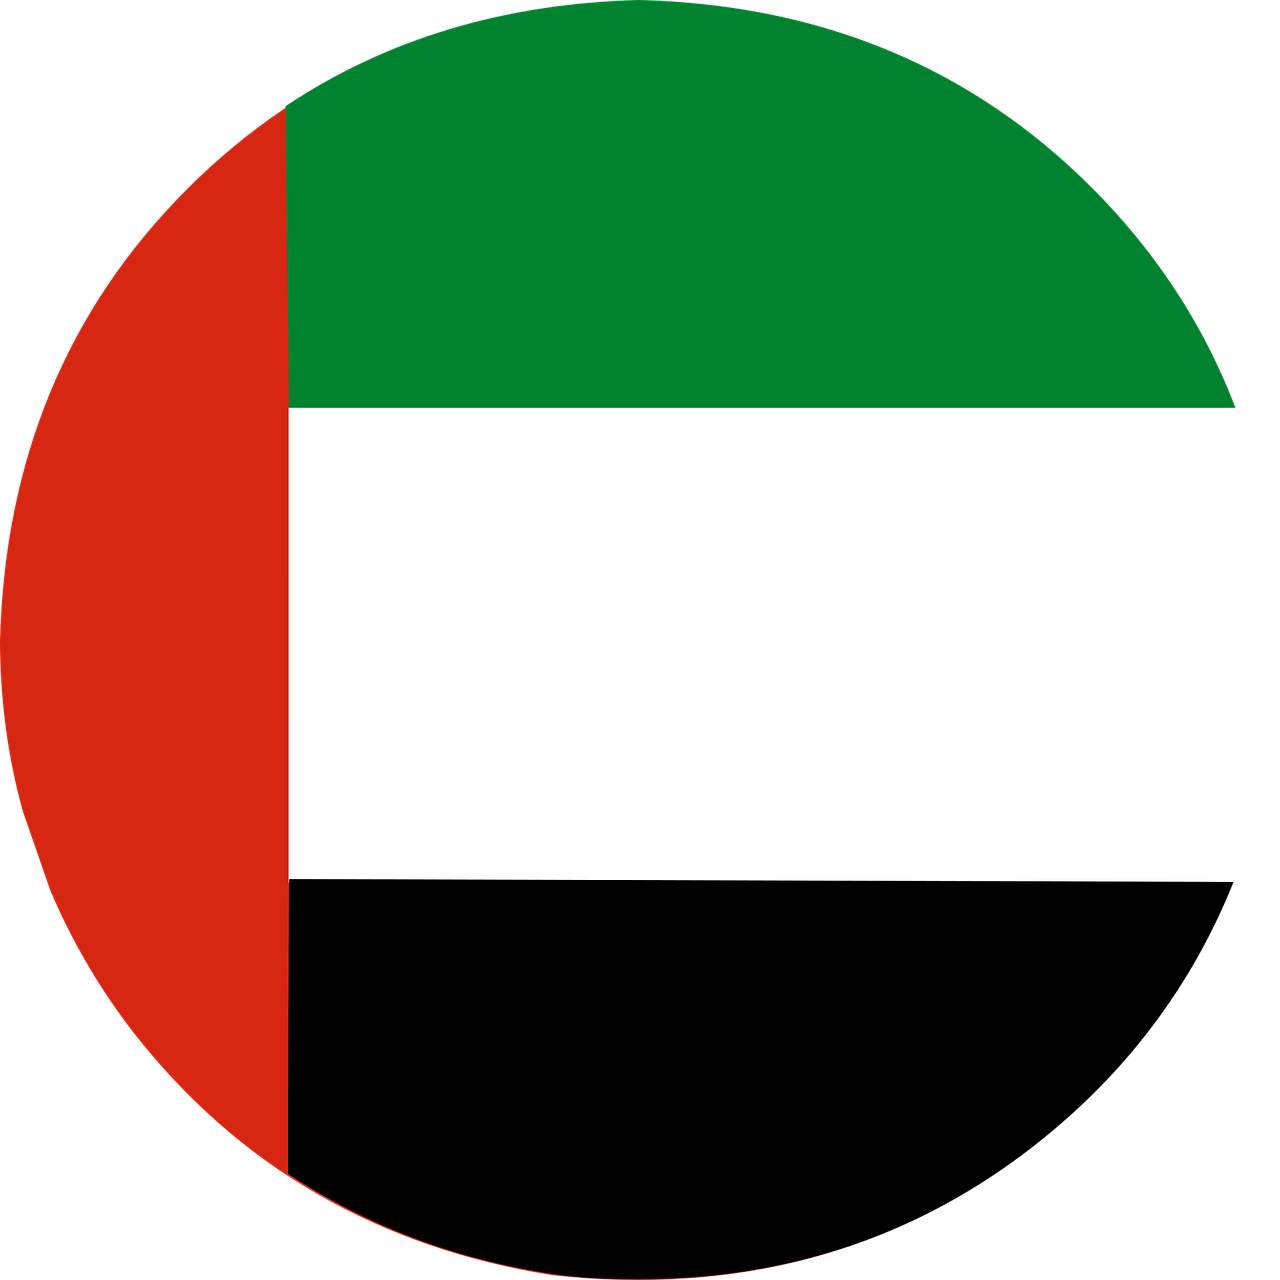 Abu Dhabi Flag PNG Free File Download